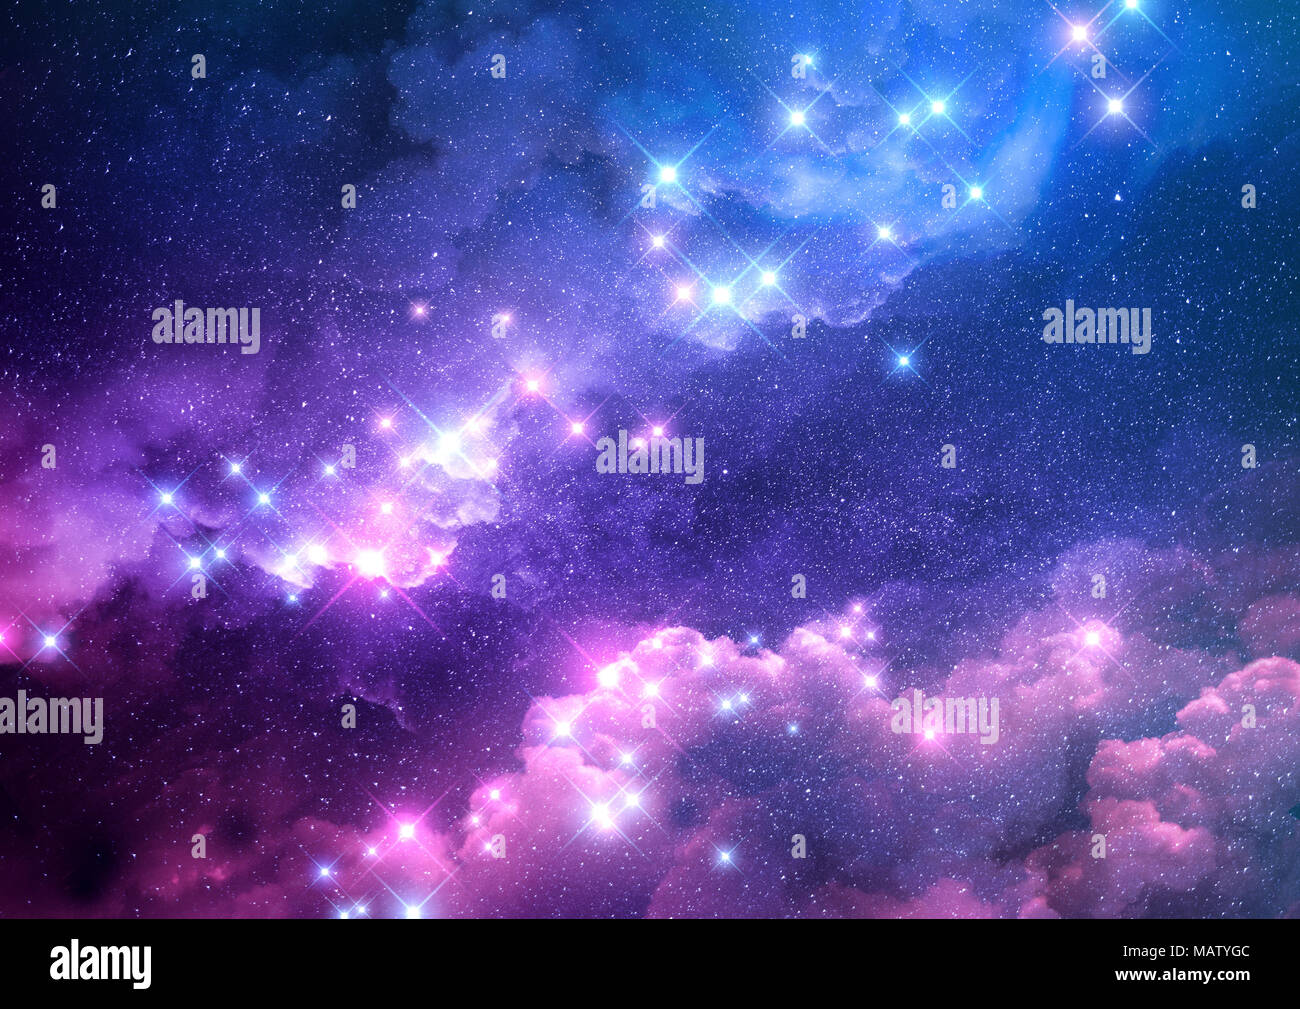 Abstract Pink Und Blau Galaxy Hintergrund Mit Hellen Sternen Gefullt Raster Abbildung Stockfotografie Alamy